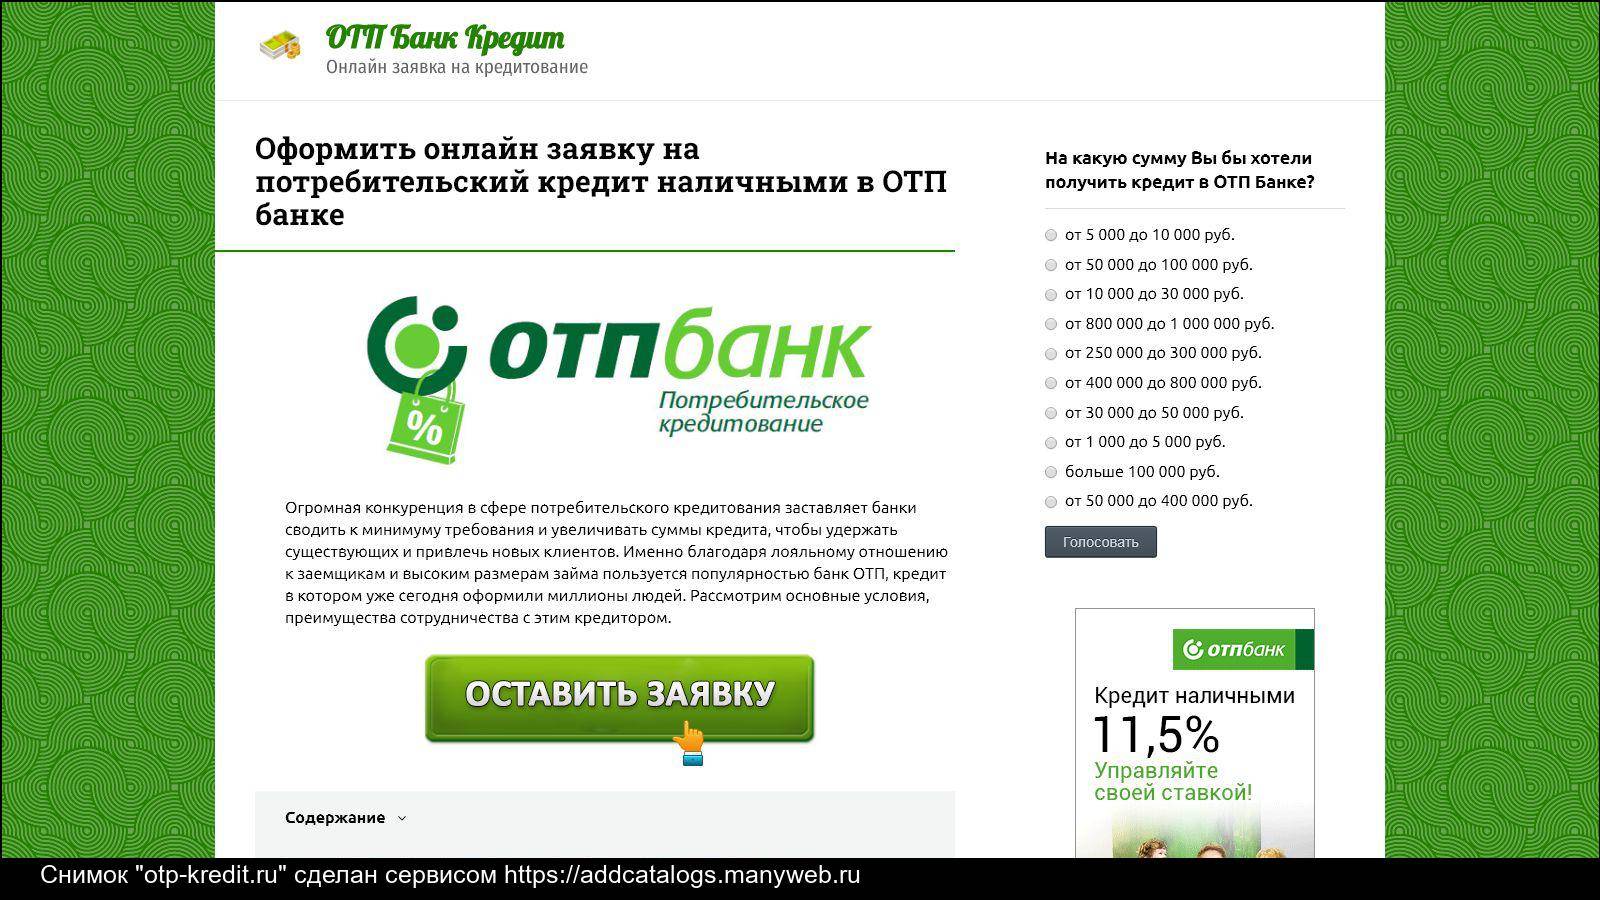 Онлайн-заявка на кредит в отп-банке в россии, взять кредит наличными в отп-банке онлайн через интернет